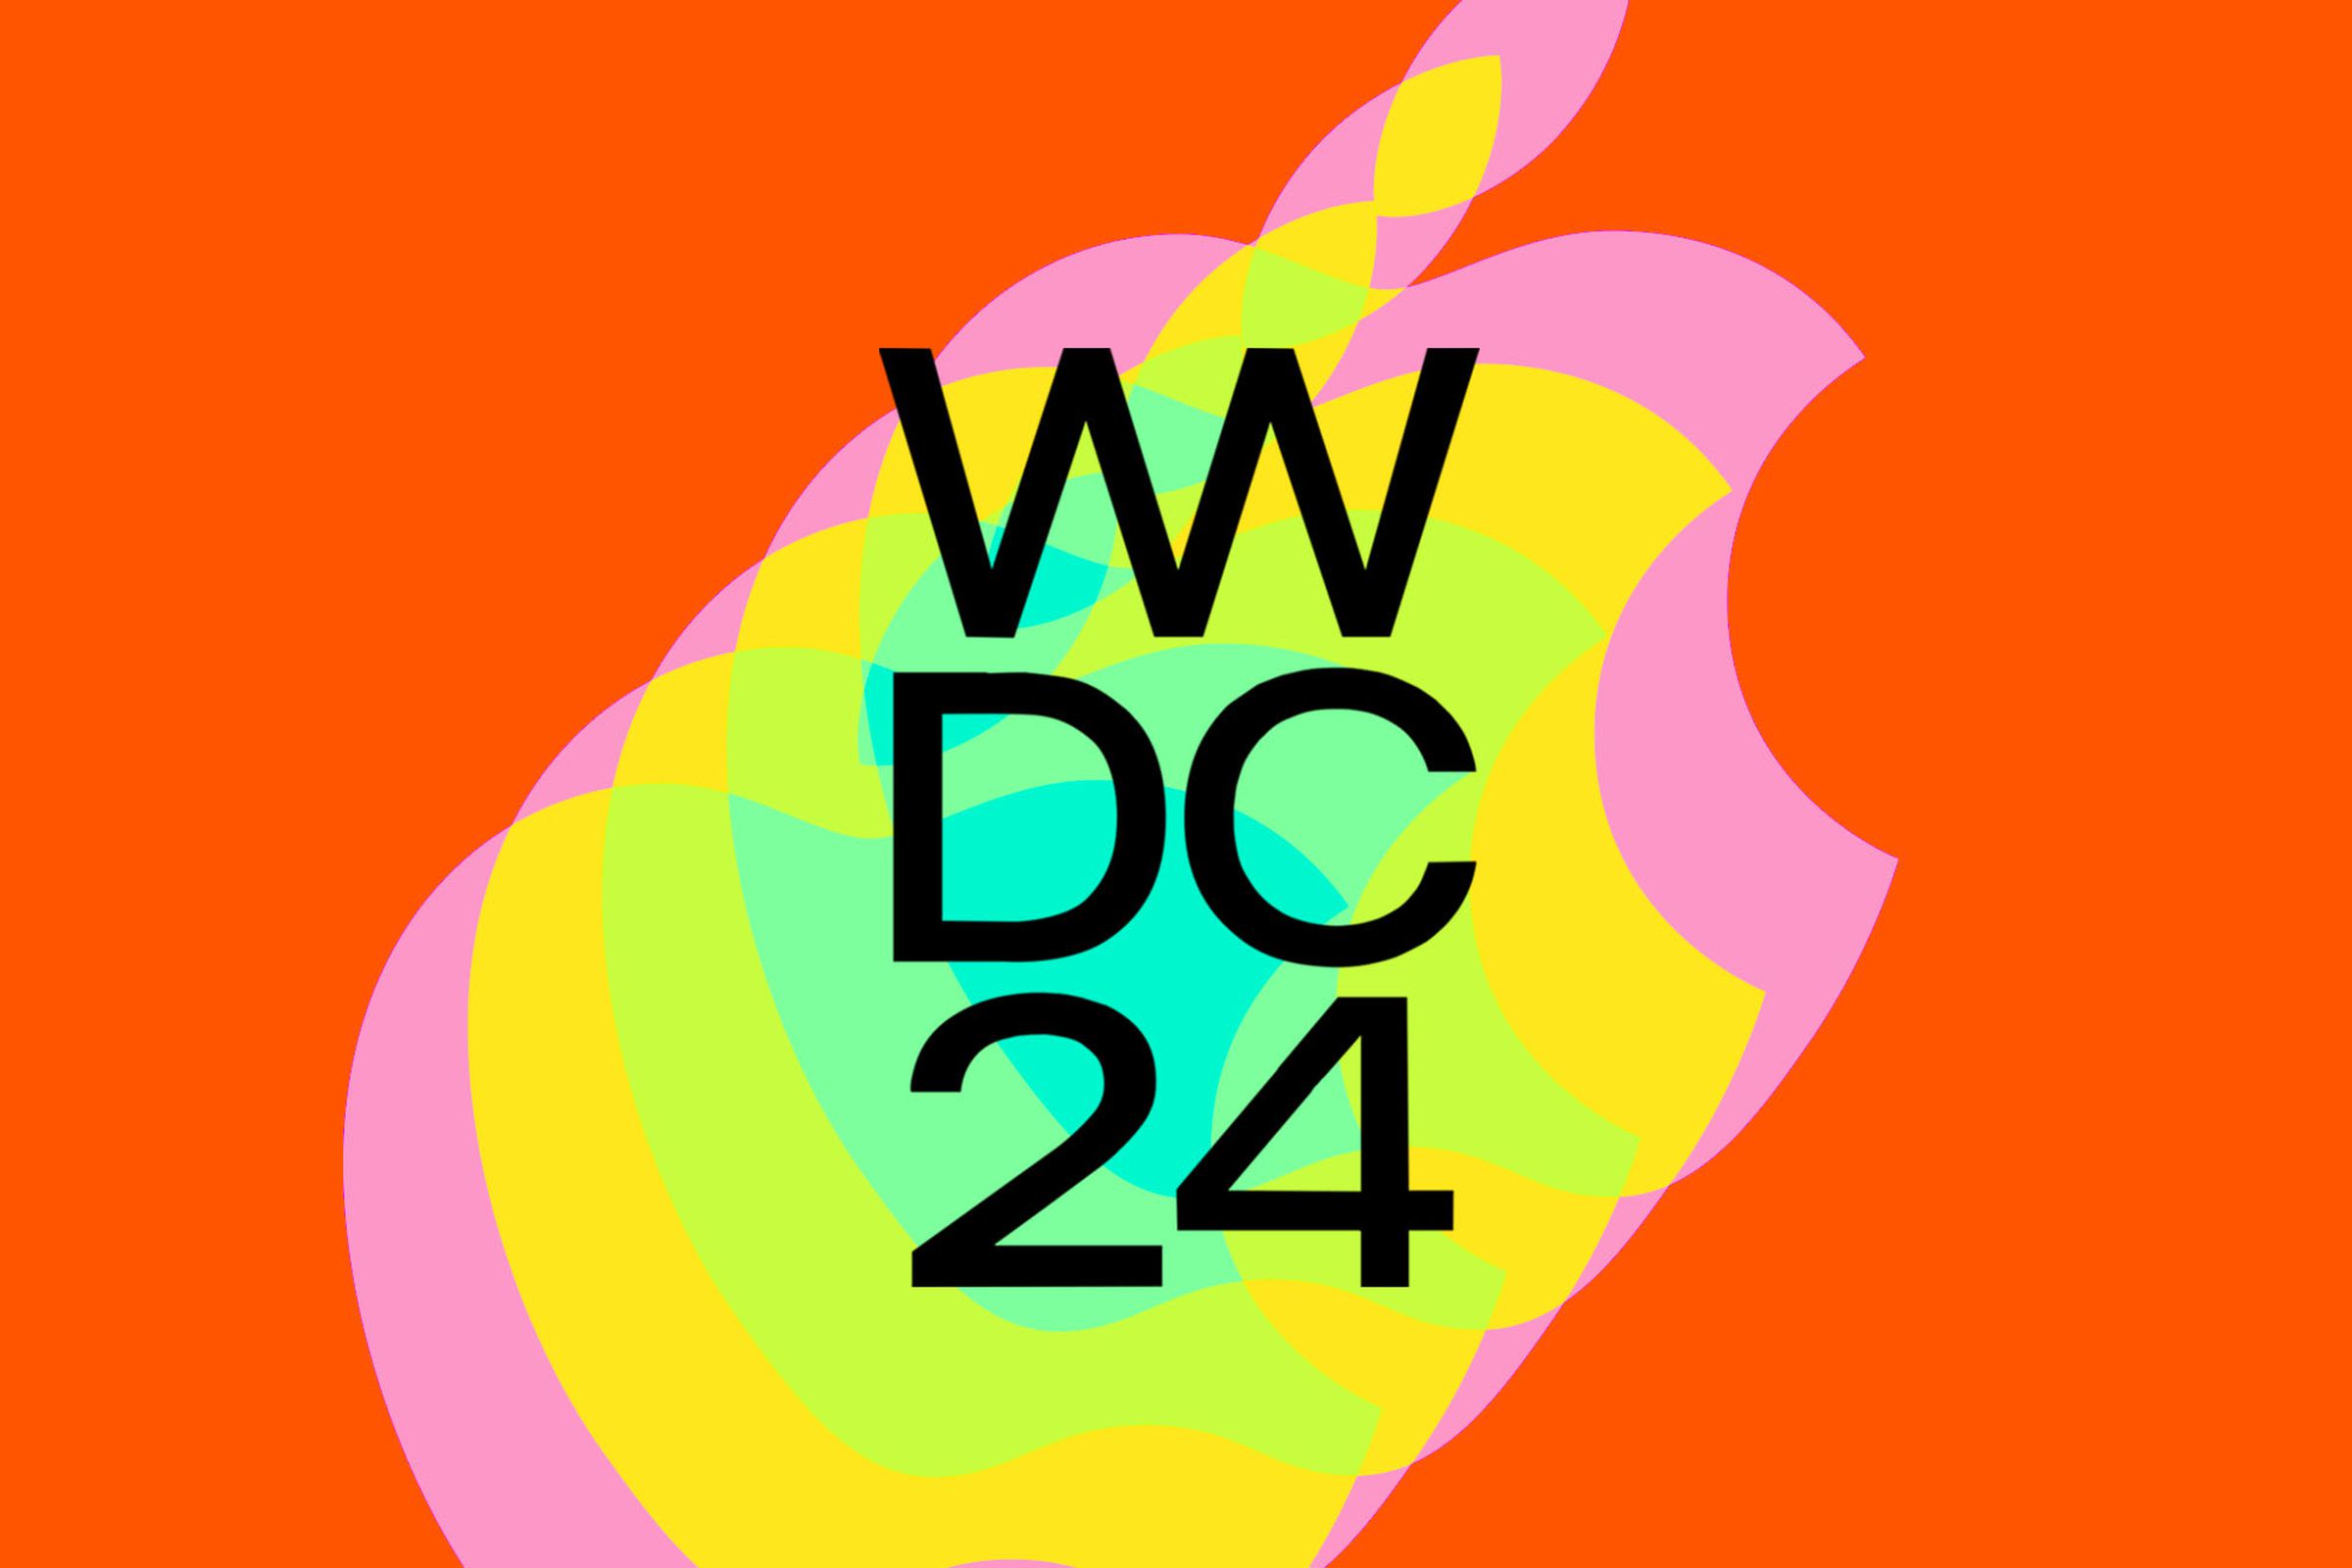 The WWDC 2024 logo.